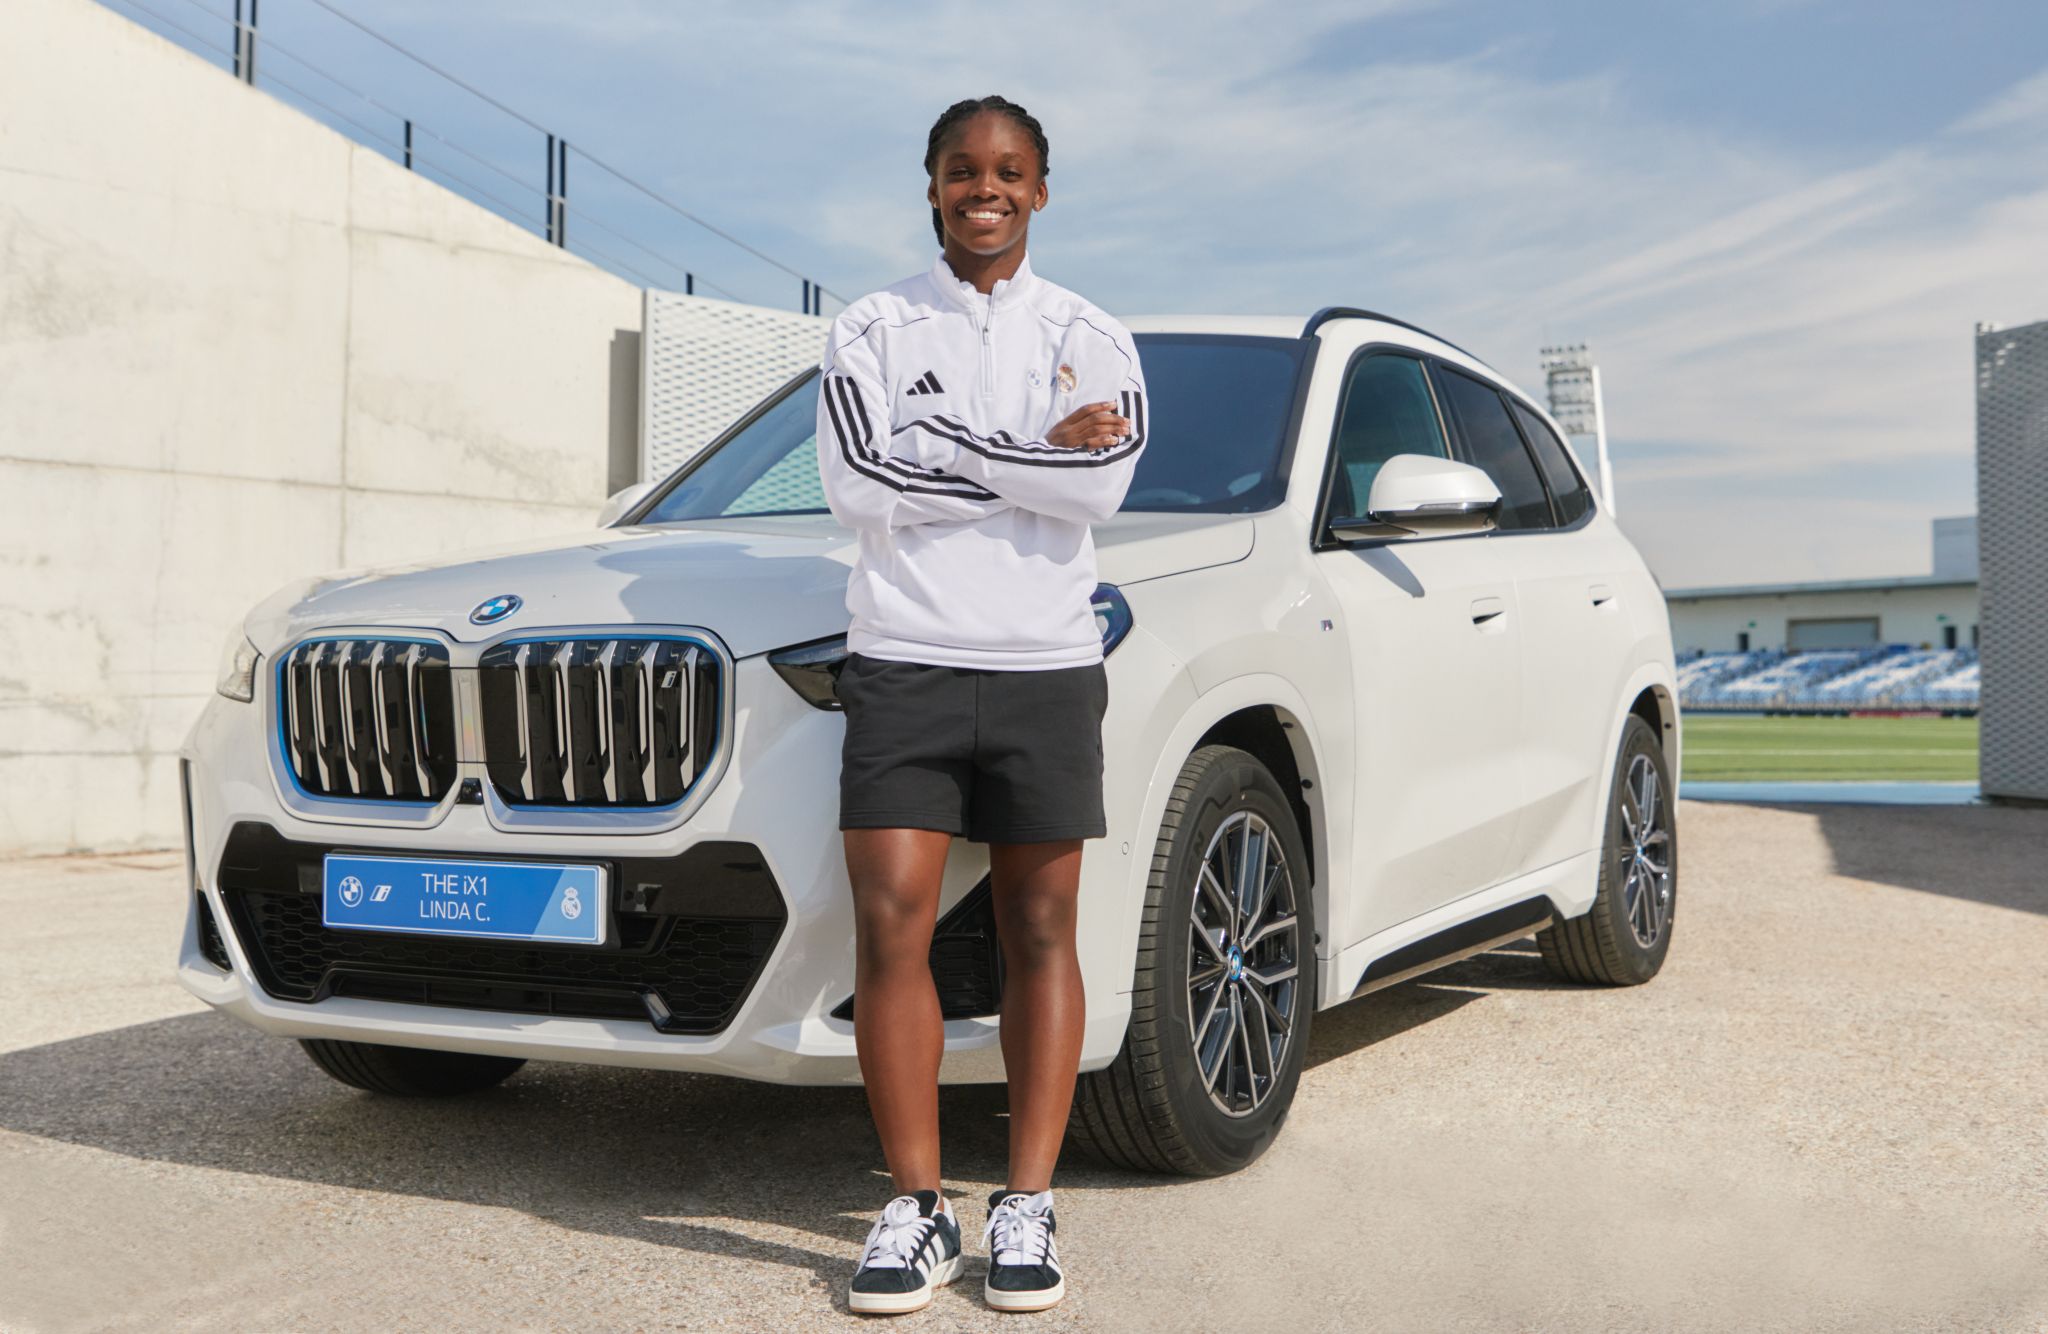 Jogadoras do Real Madrid ganham carros eletrificados da BMW!